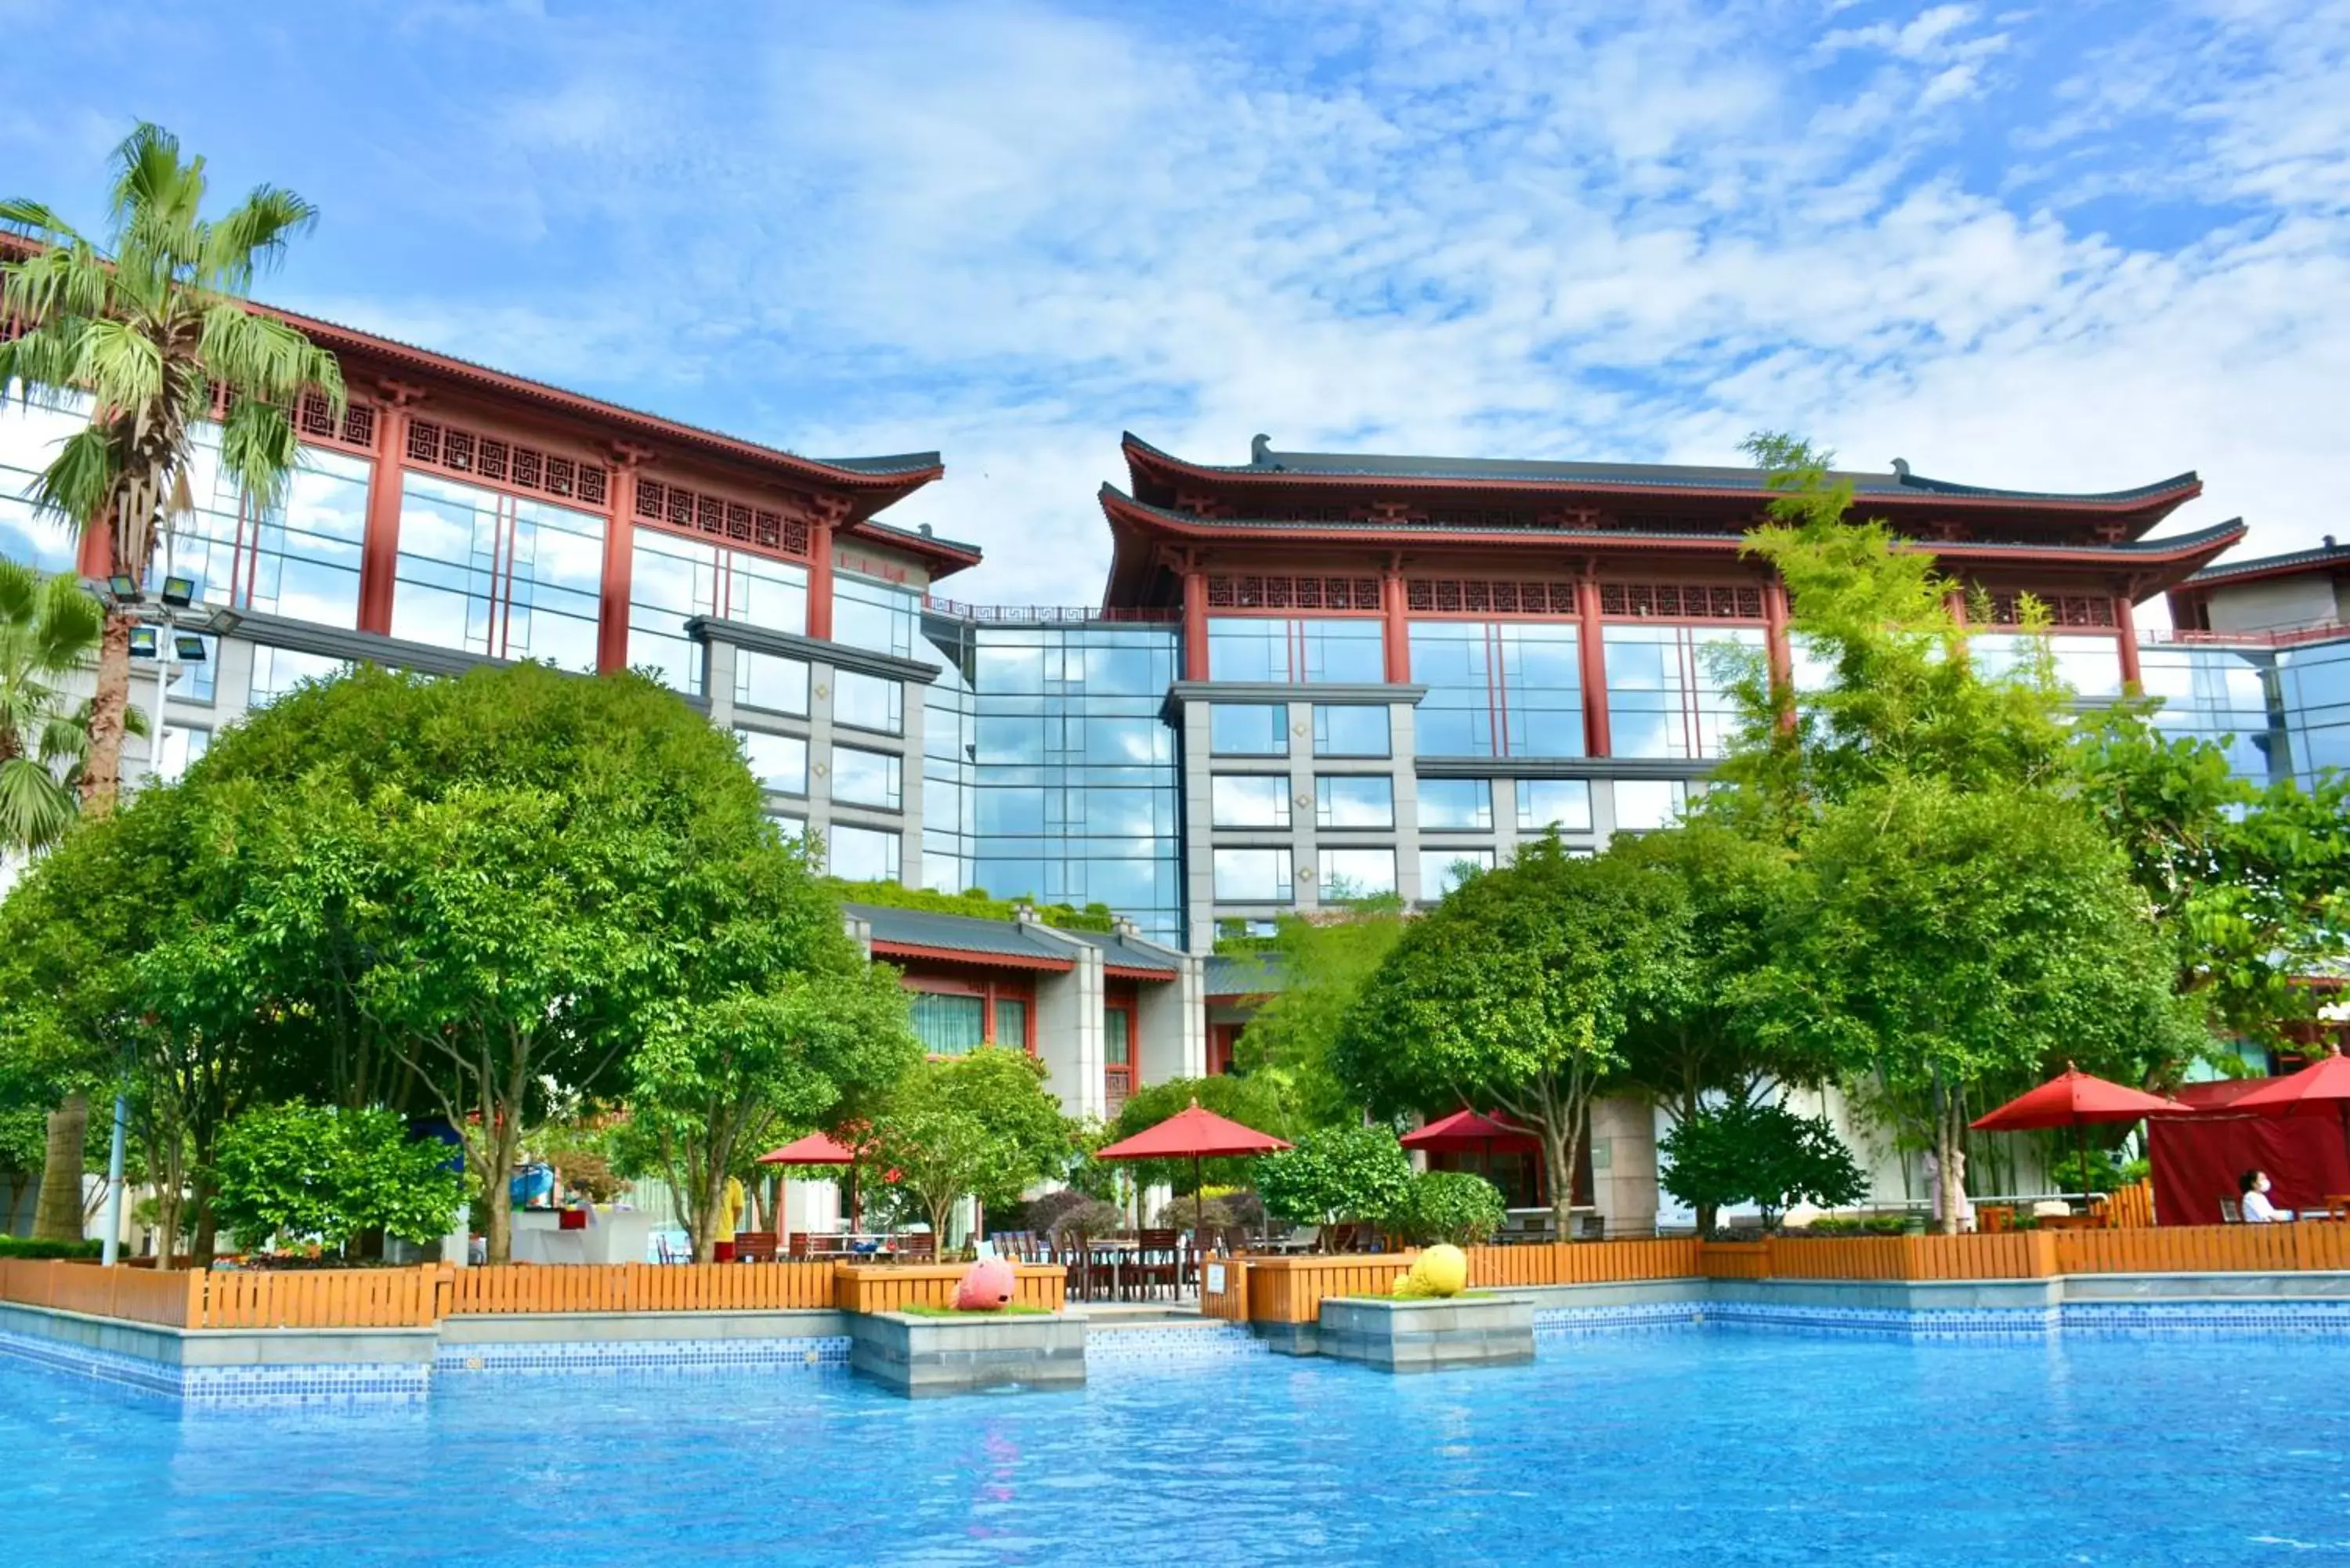 Swimming pool, Property Building in Shangri-La Guilin